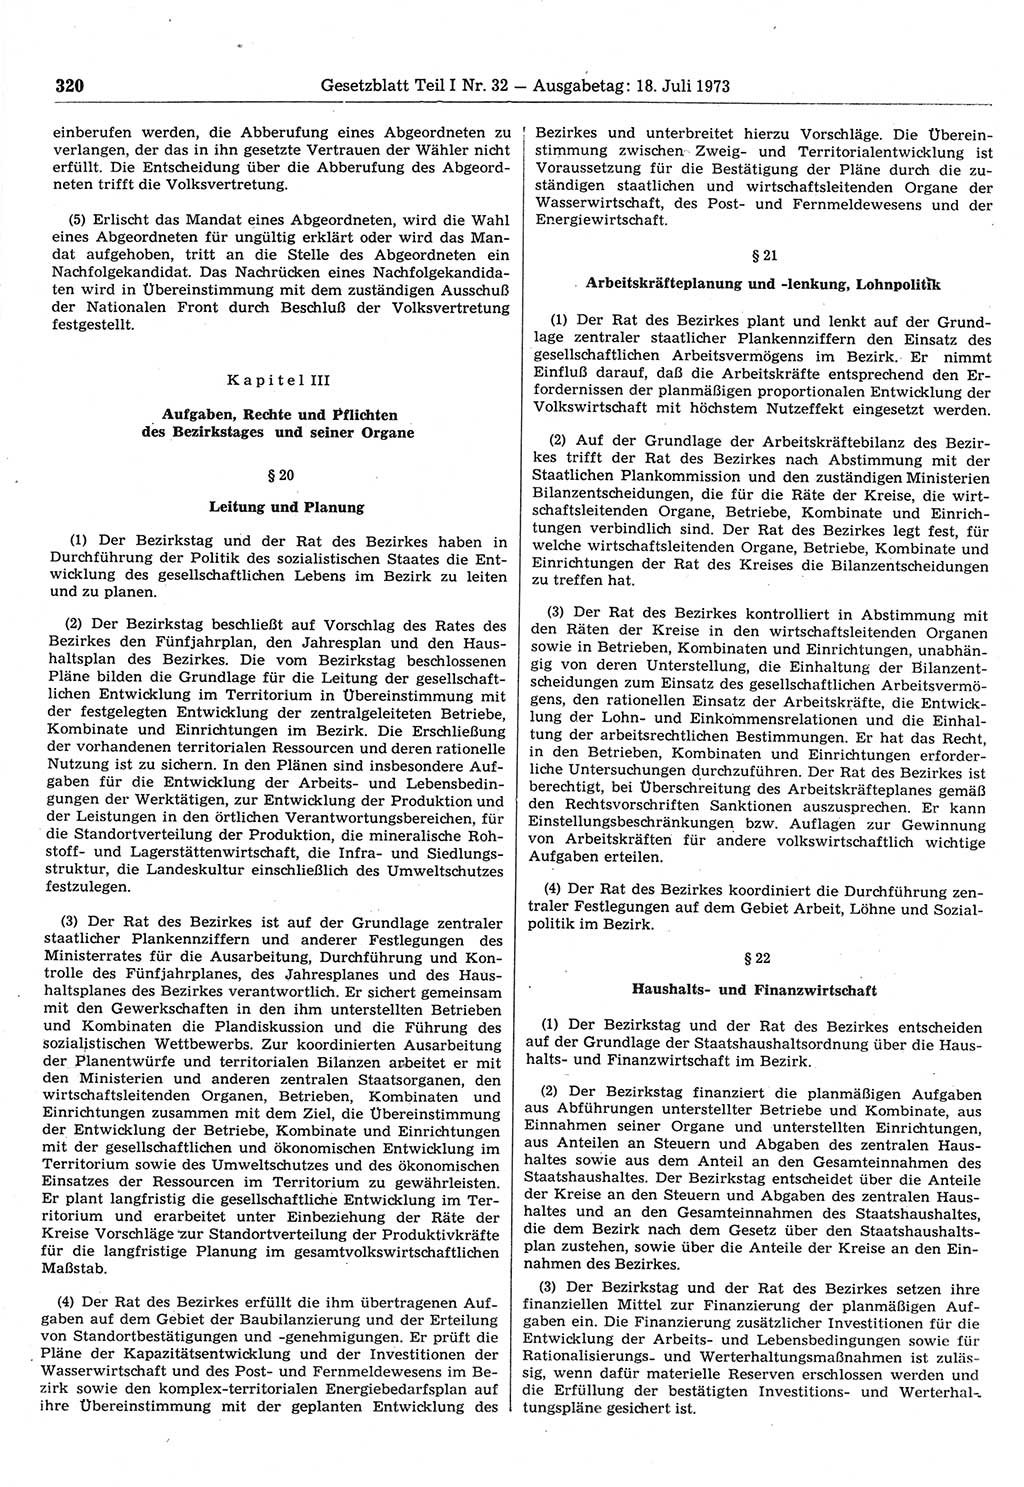 Gesetzblatt (GBl.) der Deutschen Demokratischen Republik (DDR) Teil Ⅰ 1973, Seite 320 (GBl. DDR Ⅰ 1973, S. 320)